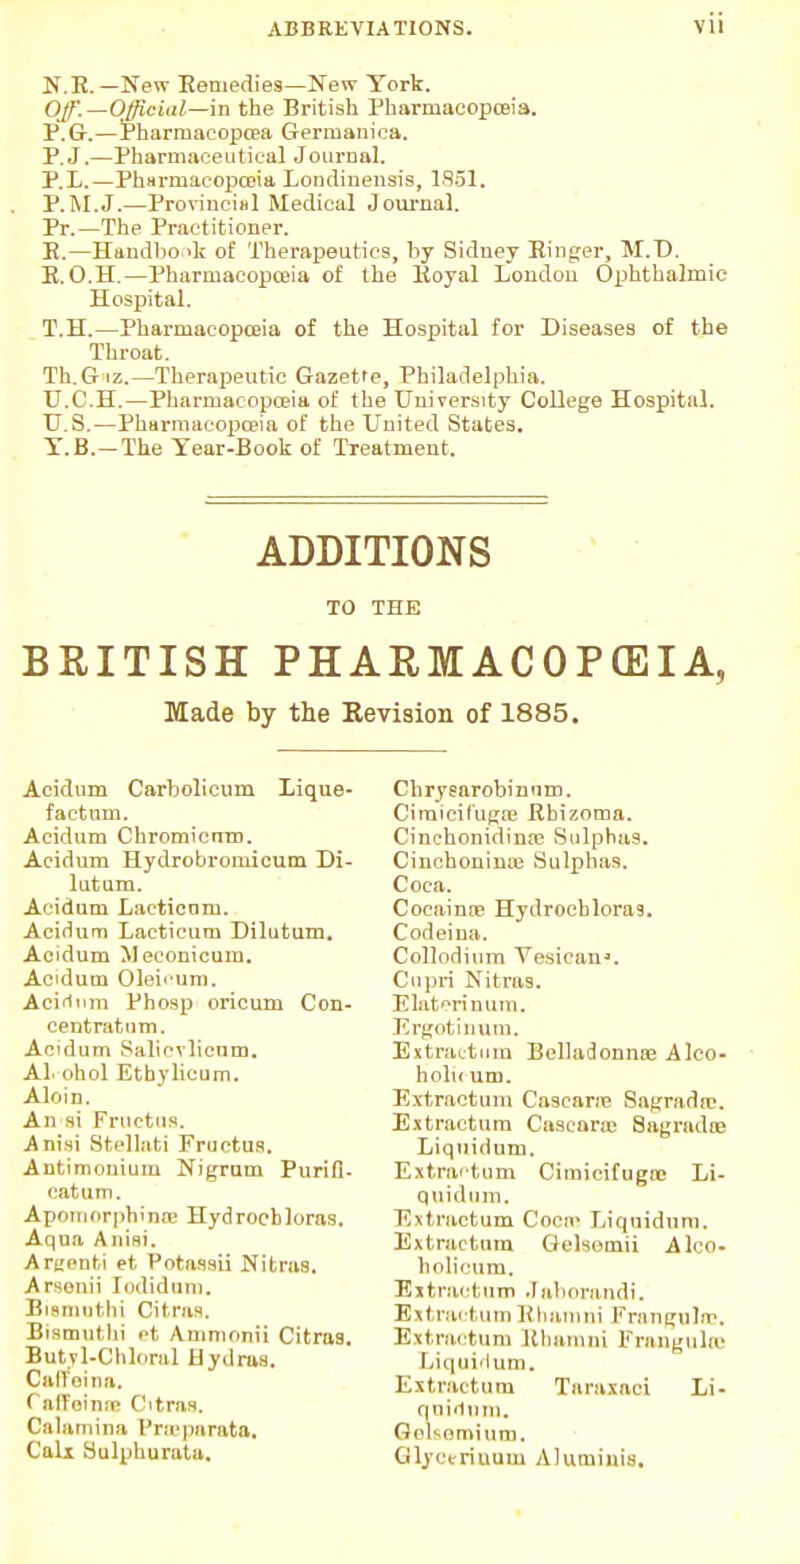 H.E. — New Kennedies—New York. Off.—Official—m the British Pharmacopoeia. P.G.—Pharmaeopcea Germanica. P.J.—Pharmaceutical Journal. P.L.—Pharmacopoeia Londinensis, 1851. P.M.J.—Provincial Medical Journal. Pr.—The Practitioner. E.—Handbook of Therapeutics, by Sidney Ringer, M.D. E.O.H.—Pharmacopoeia of the Eoyal London Ophthalmic Hospital. T.H.—Pharmacopoeia of the Hospital for Diseases of the Throat. Th.G iz.—Therapeutic Gazette, Philadelphia. U.C.H.—Pharmacopoeia of the University College Hospital. U.S.—Pharmacopoeia of the United States. Y.B.-The Year-Book of Treatment. ADDITIONS TO THE BRITISH PHARMACOPOEIA, Made by the Revision of 1885, Acidum Carbolicum Lique- faetum. Acidum Chromicnm. Acidum Hydrobromicum Di- lutam. Acidum Laetioam. Acidum Lacticurn Dilutum. Acidum Meconicum. Acidum Oleb'um. Acifitim Phosp oricum Con- centratum. Acidum Salicvlicum. Al ohol Ethylicum. Aloin. An si Fructus. A nisi Sfcellati Fructus. Autimonium Nigrum Purifb catum. Apomorphinae Hydrocbloras. Aqua Aiiini. Argenti et PotaSsu Nitraa. Arsenii Indidum. Biemuthi Citrus. Bismuthi ot Ammonii Citras. Butyl-Chloral Hydras. Caffeina. Oi'Toinne Citras. Calami n a Proeparata, Calx Hulpburata. Cbrysarobinum. Ciraicifugse Rbizoma. Cinchonidina? Sulphas. Cmcboninie Sulphas. Coca. Cocainre Hydrocbloras. Codeiua. Collodium Yesican*. Cupri Nitras. Elatori num. Ergotinum. Extractum Belladonna? Alco- holu um. Extractum Cascara? Sagradai. Extractum Cascane Sagrada? Liquidum. Extractum Cimicifugtc Li- quidum. Extractum Cocra Liquidum. Extractum Gelsomii Alco- h oli cum. Extractum Jabnrandi. Extractum Rhamni Frangula?. Extractum Rhamni Frangulto Liquidum. Extractum Taraxaci Li- quidum. Gelsemium. Glyeerinum Aluiuiuis.